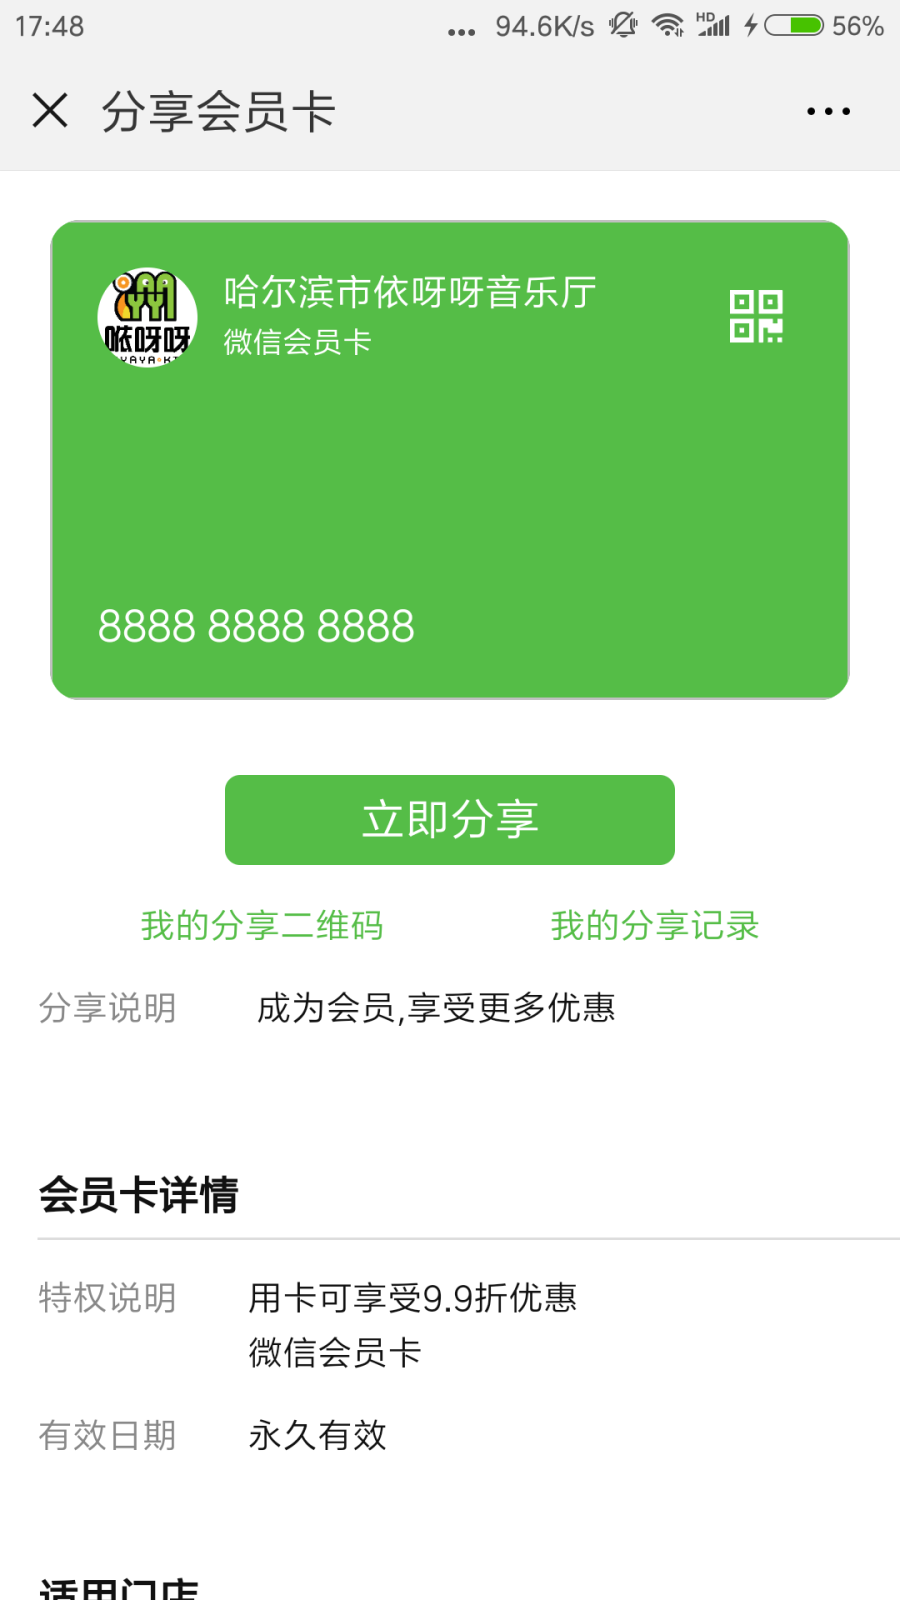 Screenshot_2018-08-27-17-48-23-555_com.tencent.mm.png